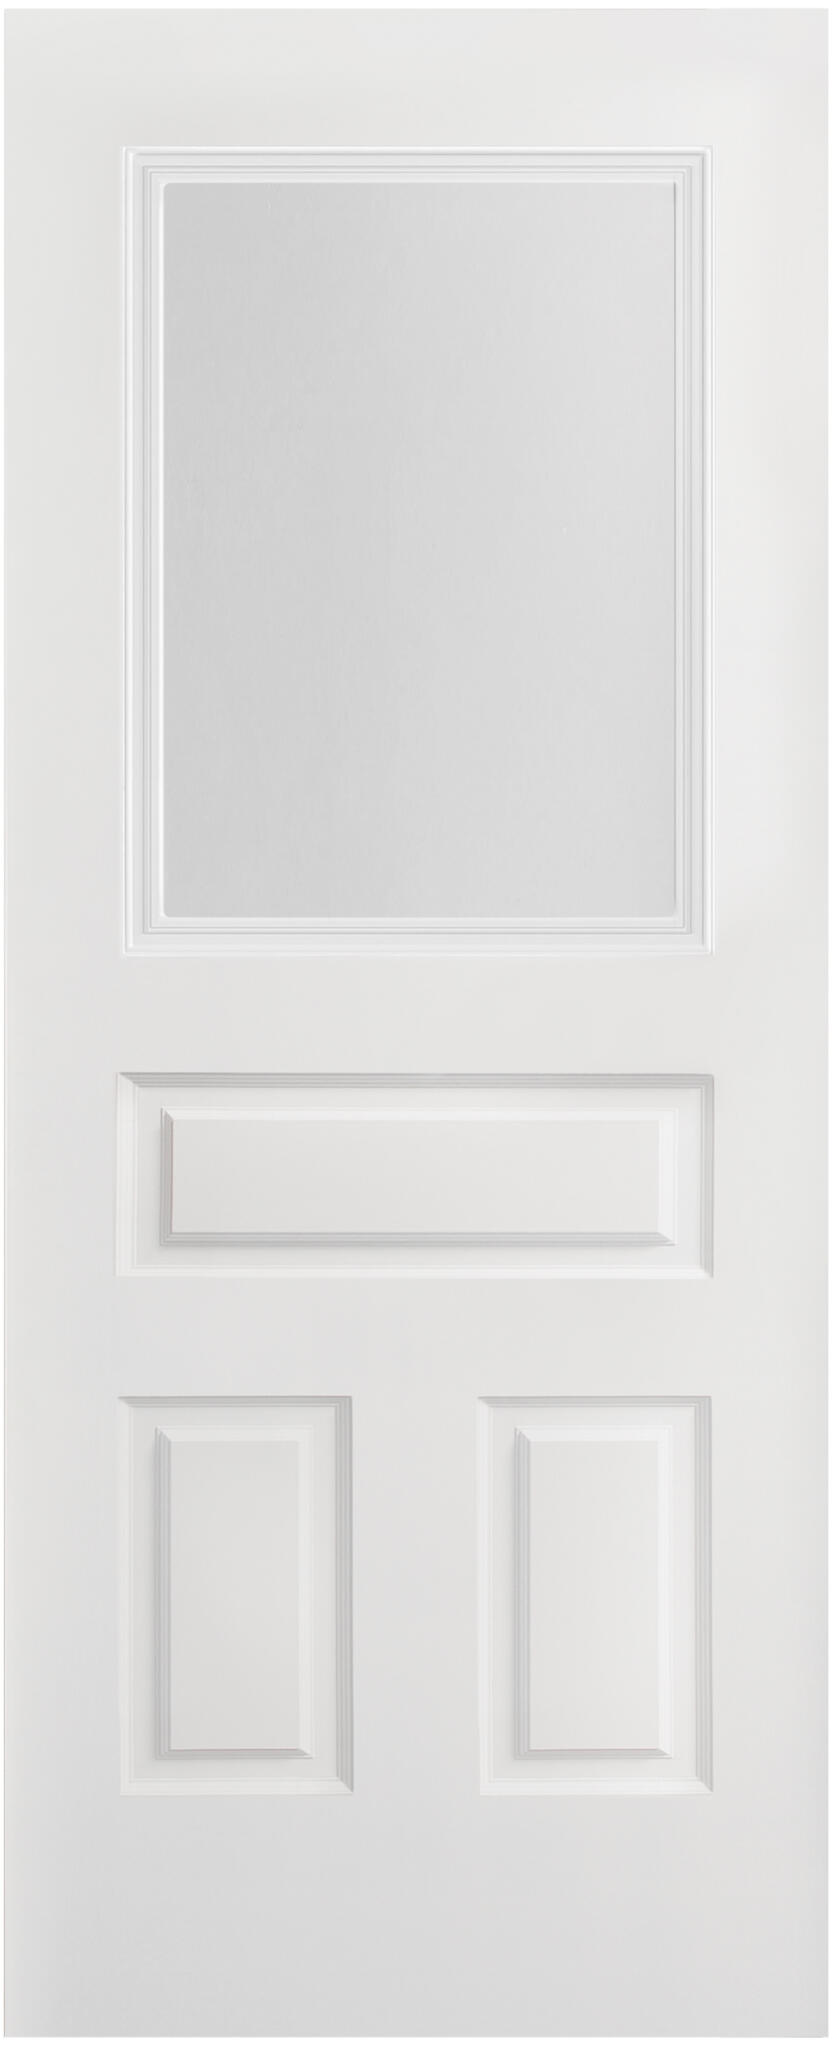 Puerta corredera indiana plus blanco cristal de 92,5x203cm